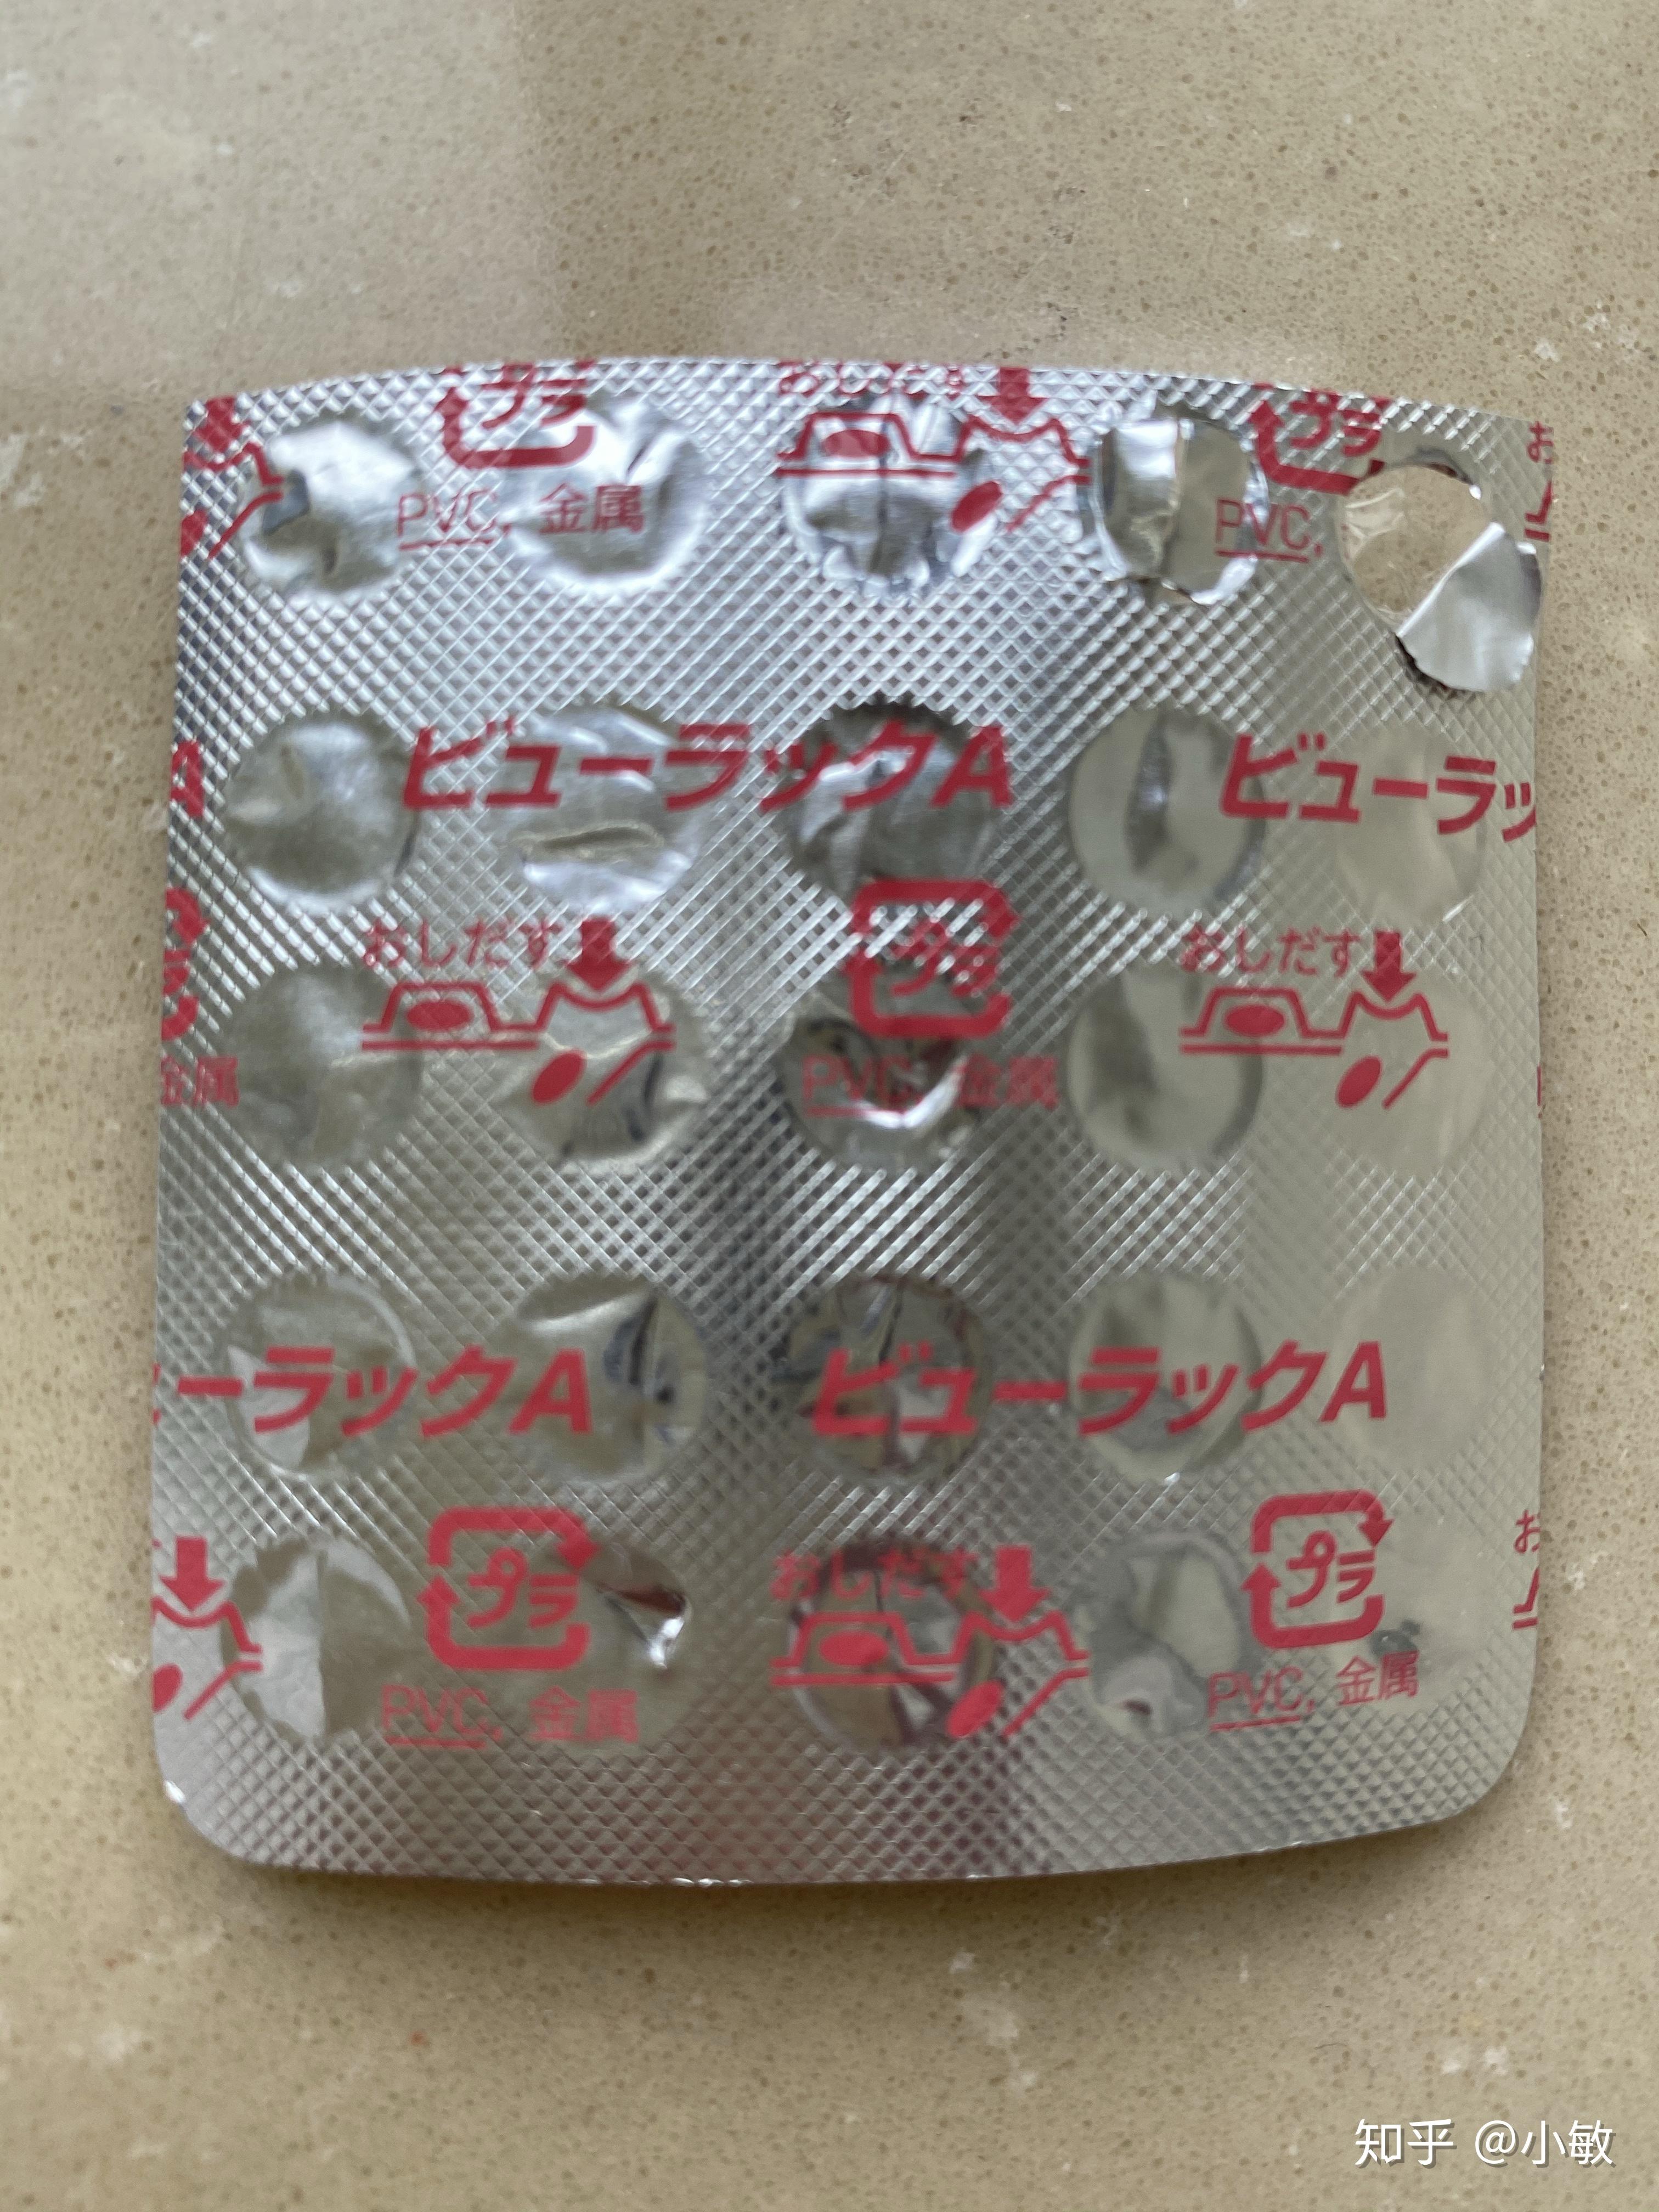 有没有人知道一种粉色的药丸背面写着pvc 金属的字样 好像是日本的药